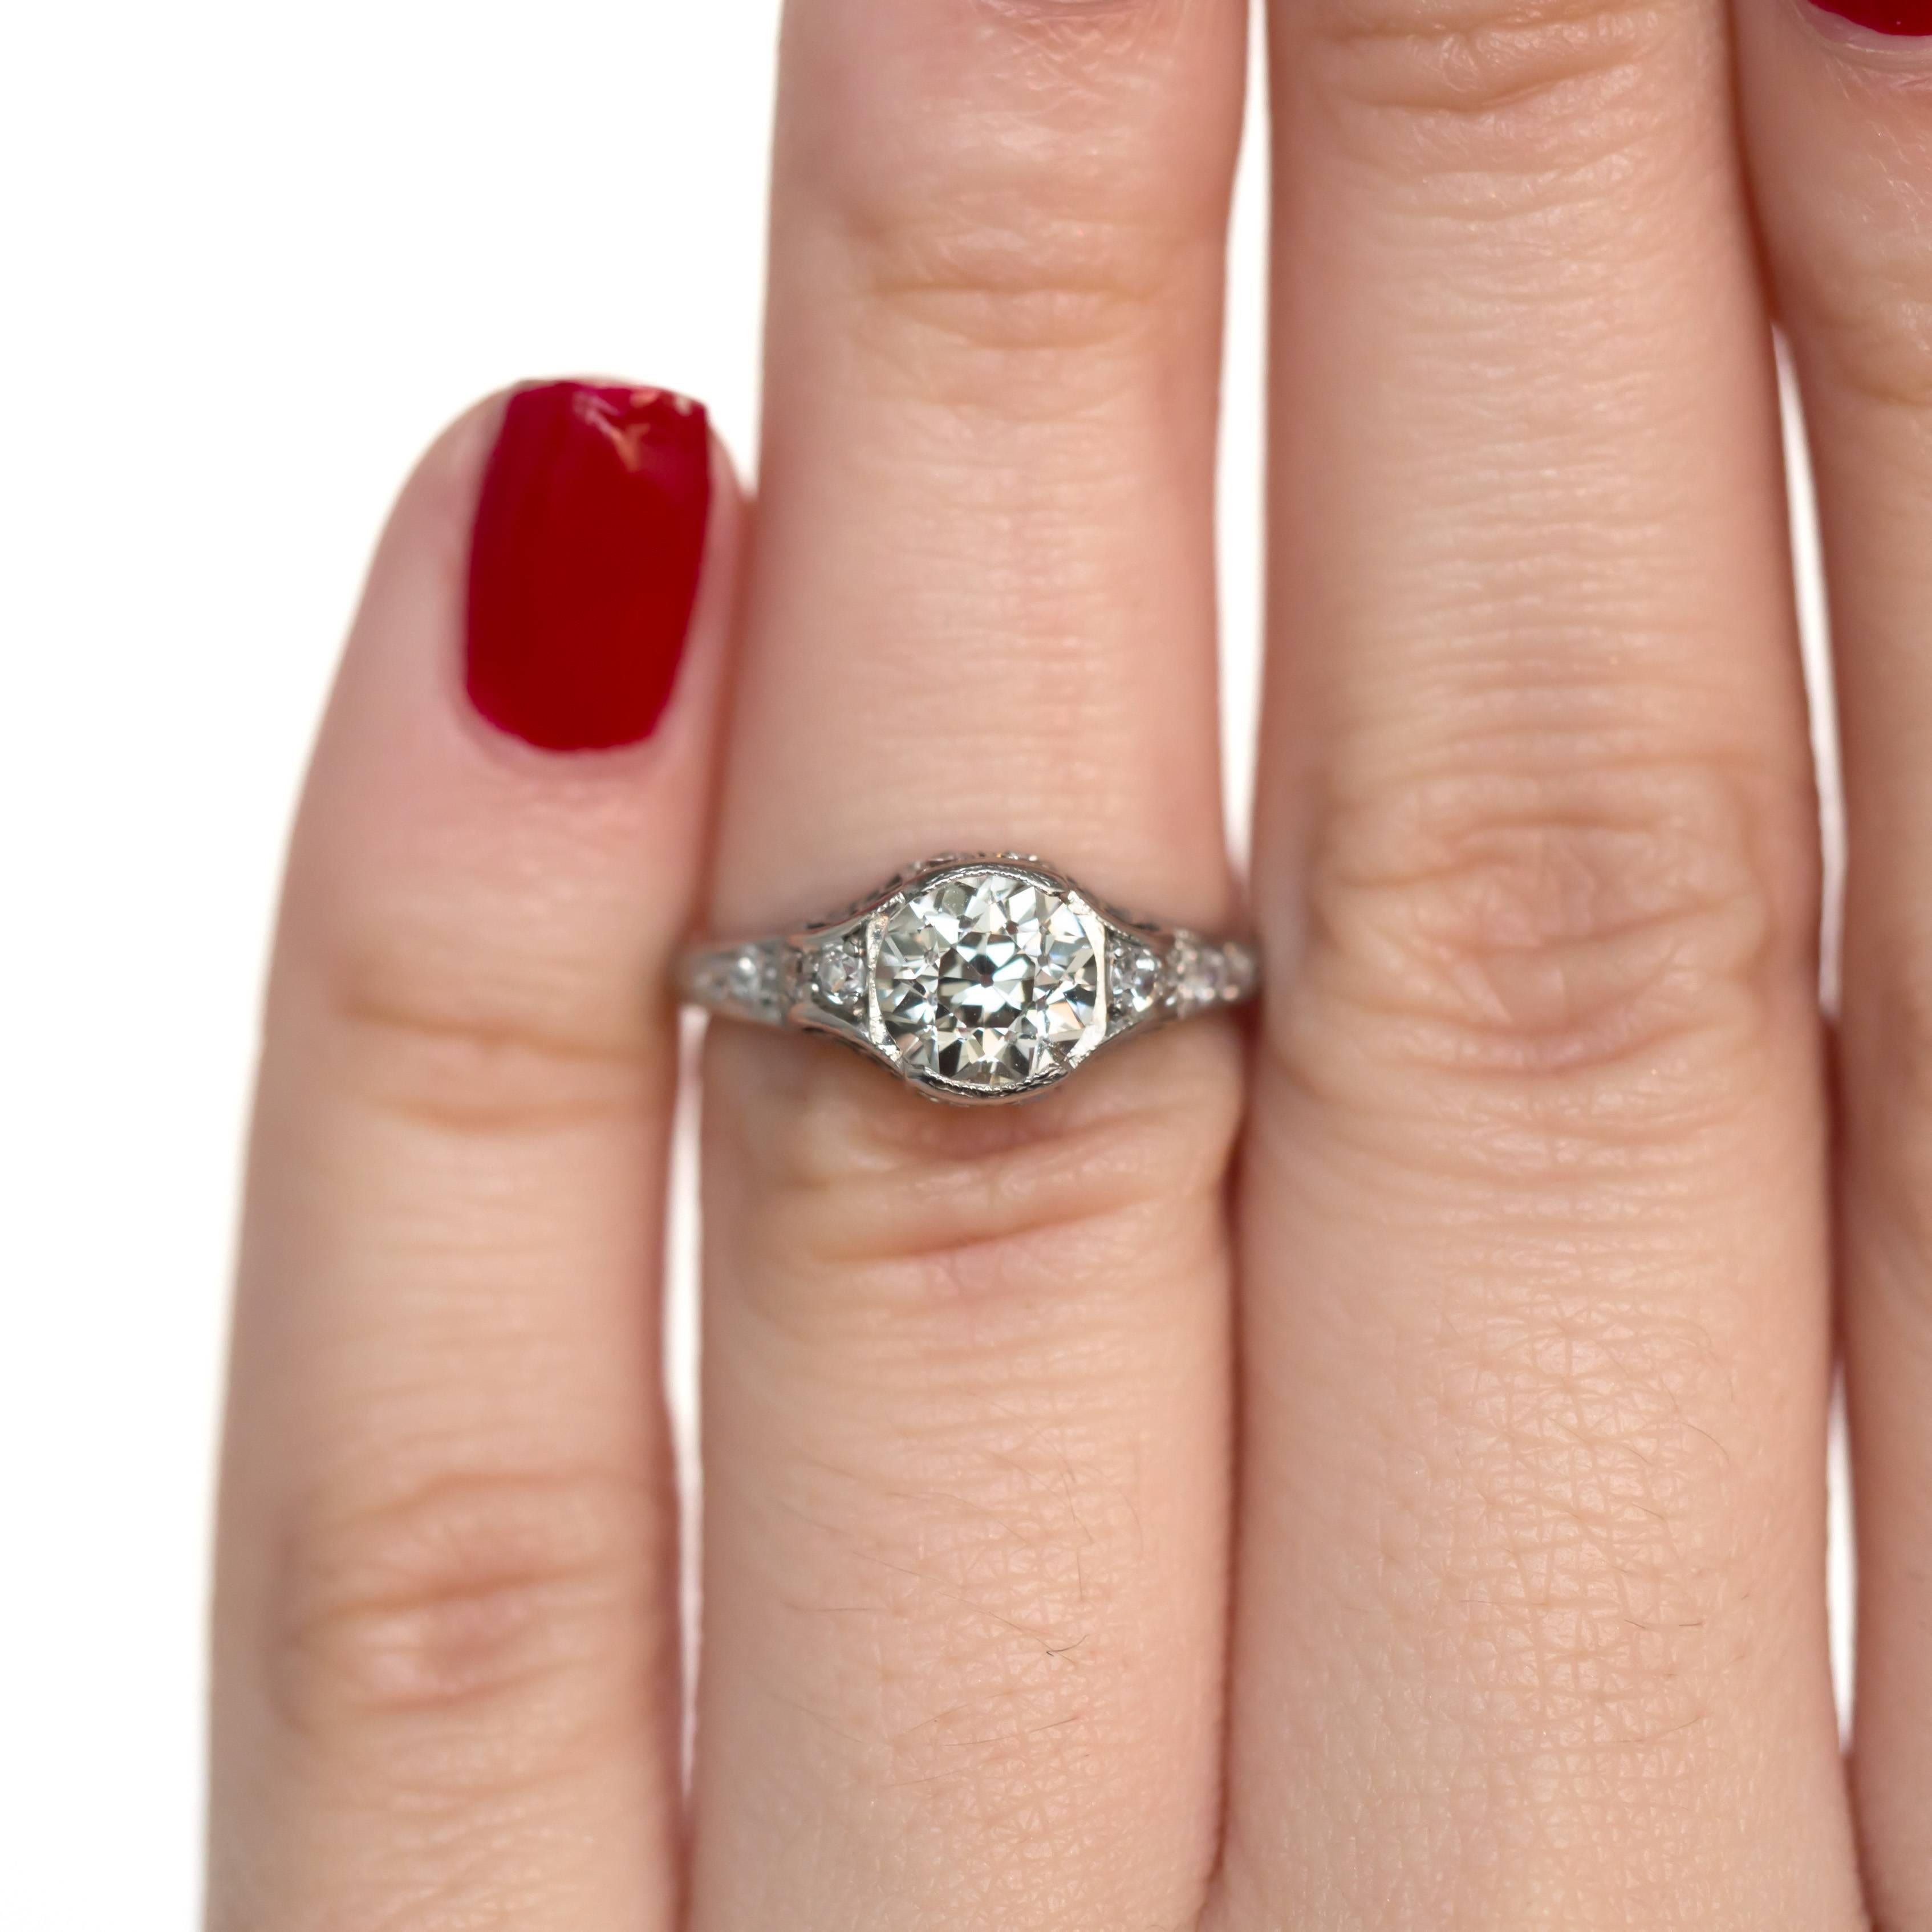 1.05 Carat Diamond Platinum Engagement Ring In Excellent Condition For Sale In Atlanta, GA